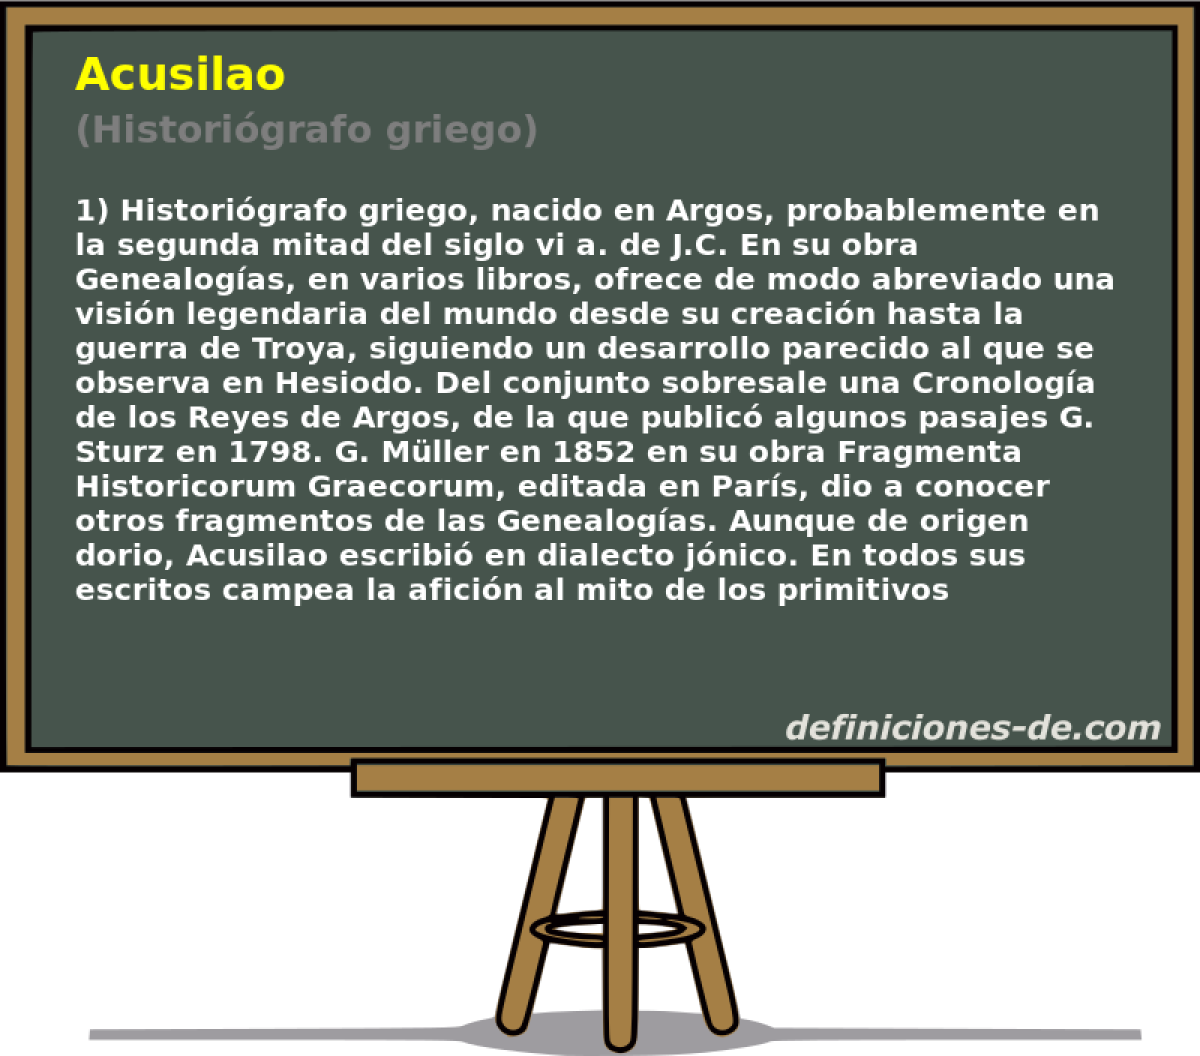 Acusilao (Historigrafo griego)